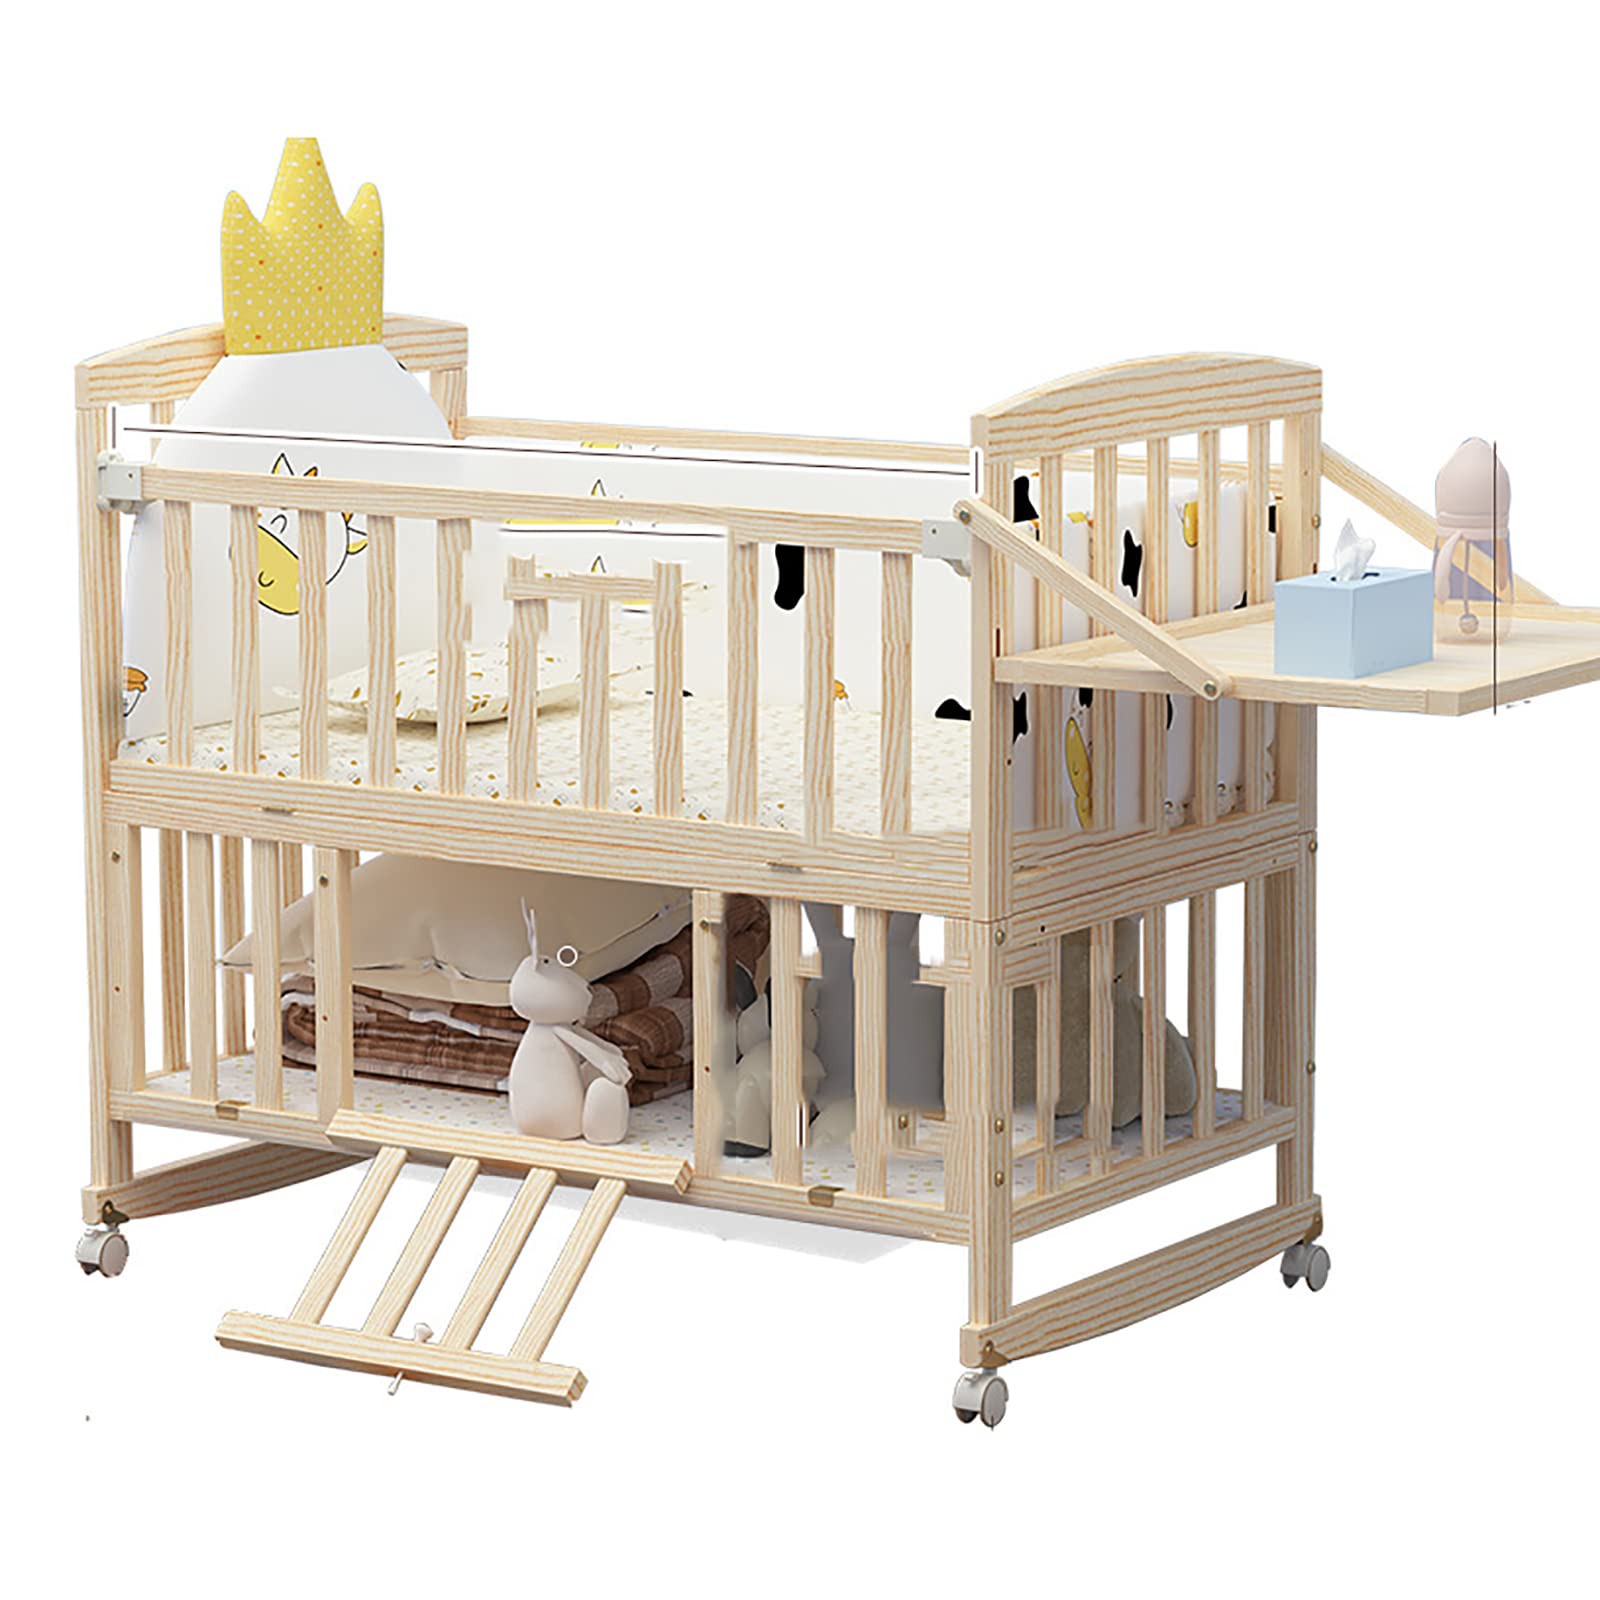 ベビーベッド 木製 5点セット付き 新生児 ベビーベッド 添い寝 キャスター付き 3段階高さ調整